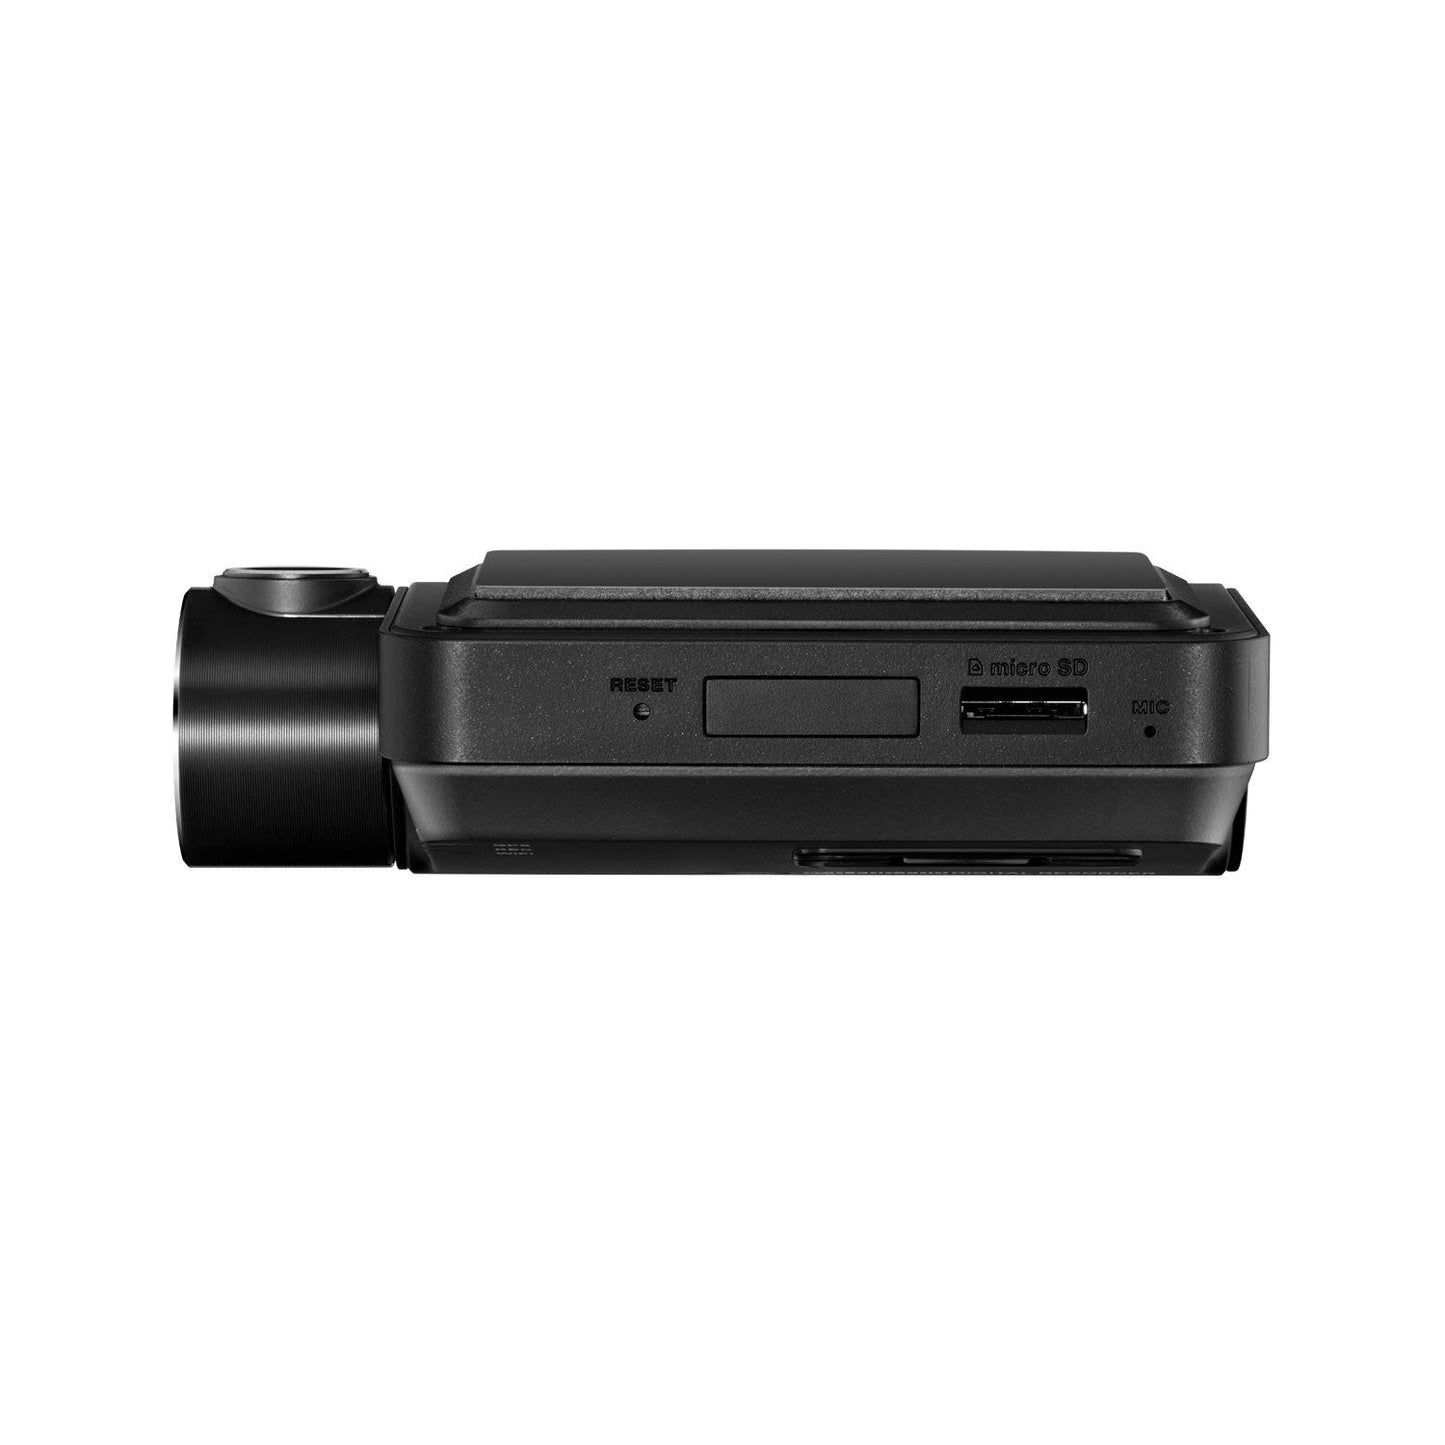 THINKWARE F800 PRO Dash Cam Full HD 1080p Sony STARVIS microSD de 32 GB WiFi y GPS incorporados camara de seguridad